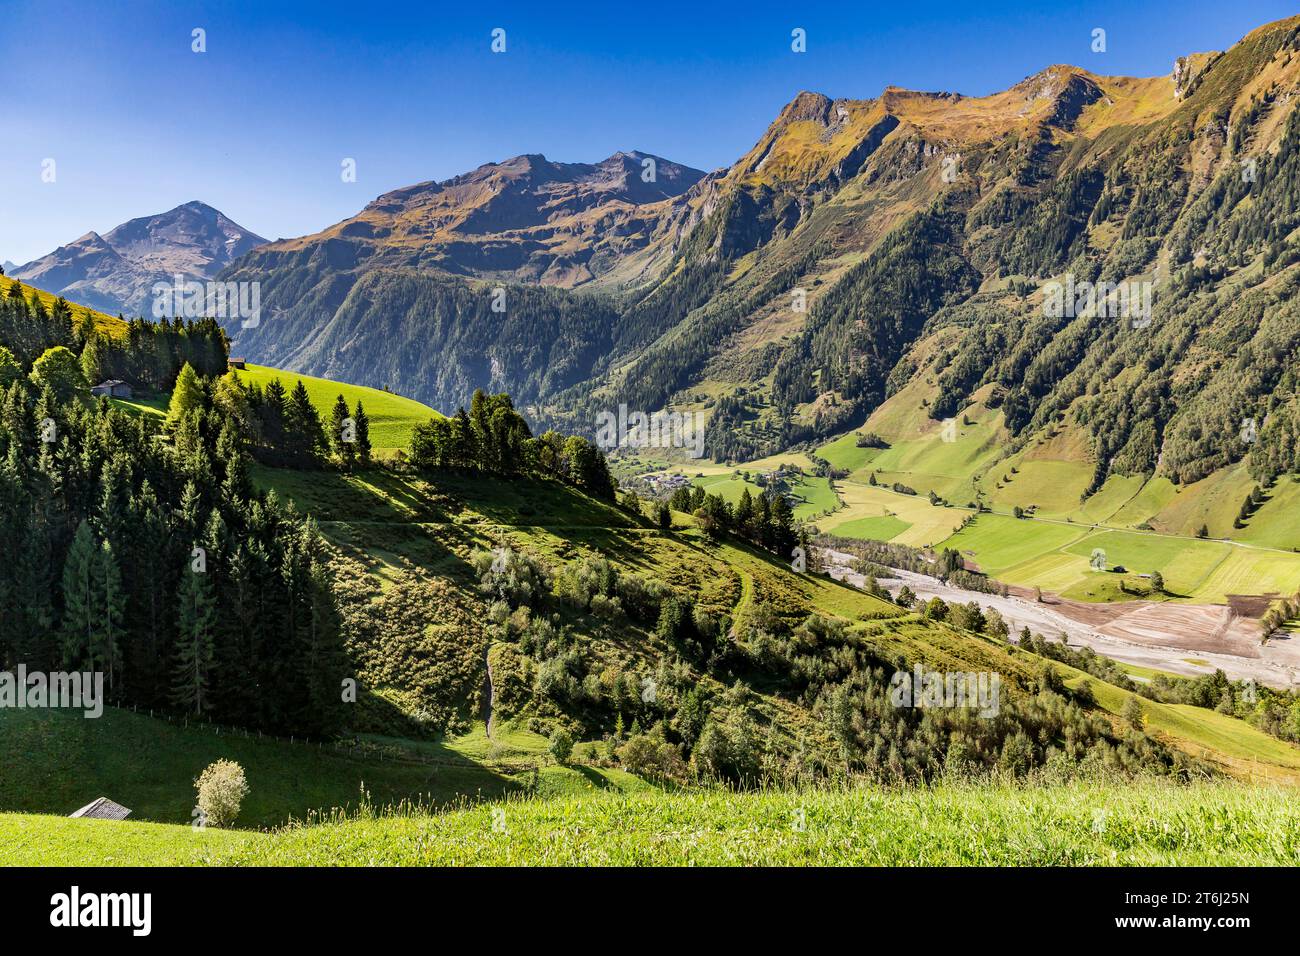 Vue de Fröstlbergweg sur le paysage de montagne, Ritterkopf, 3006 m, Edlenkopf, 2924 m, Schafkarkopf, 2727 m, Rauris, Raurisertal, Pinzgau, Salzburger Land, Autriche Banque D'Images